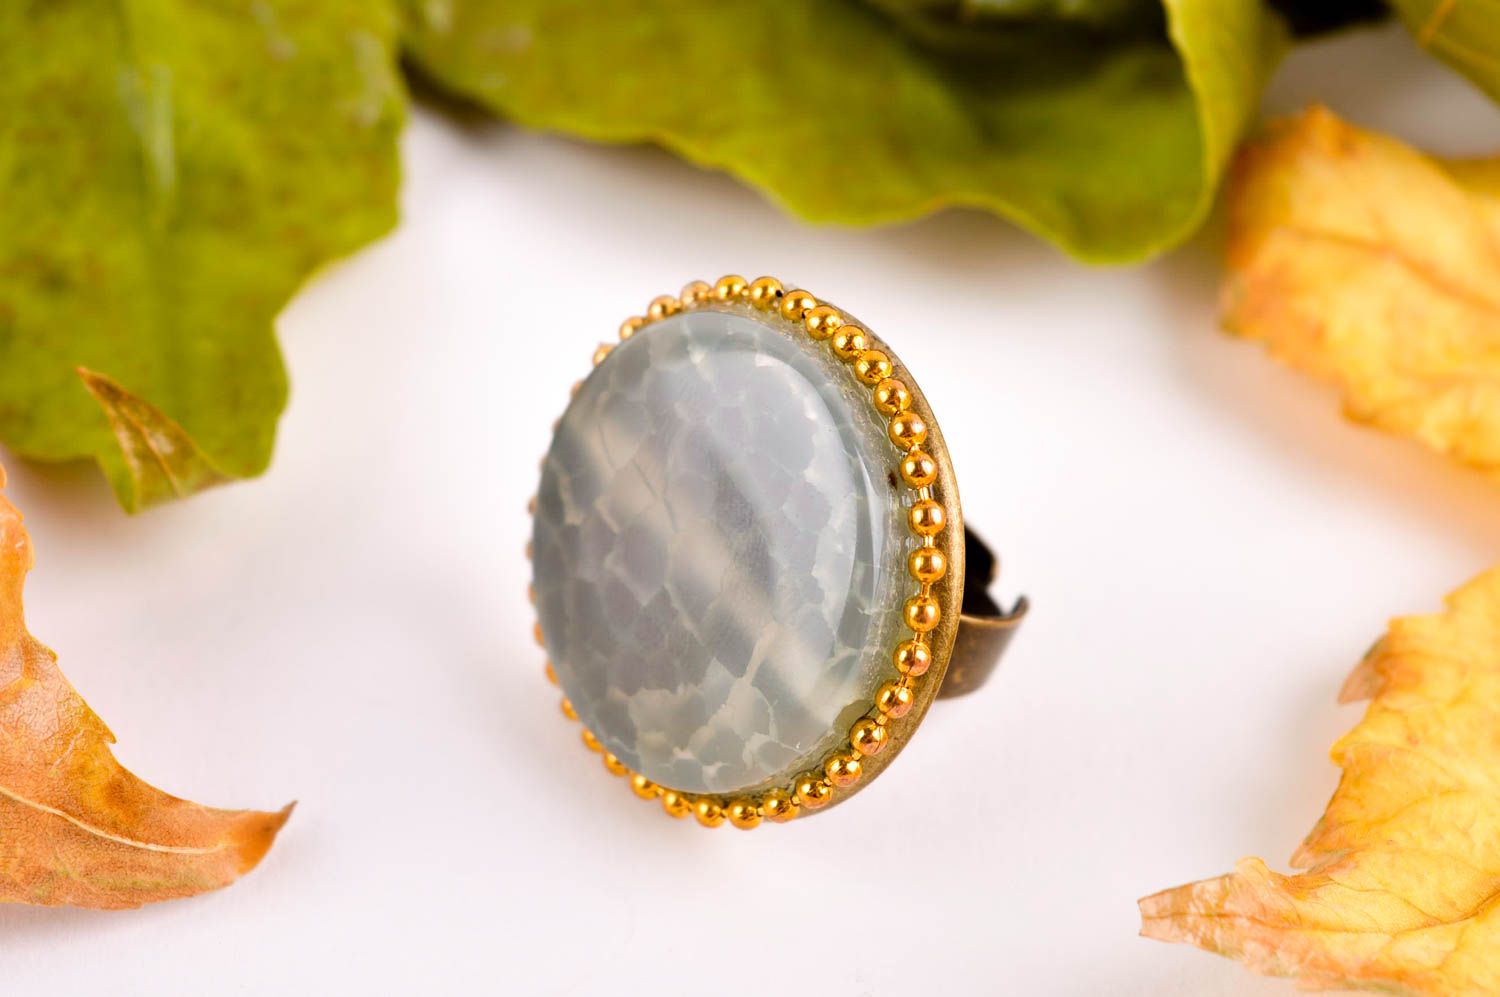 Необычное кольцо хенд мейд бижутерия из натуральных камней красивое кольцо фото 1